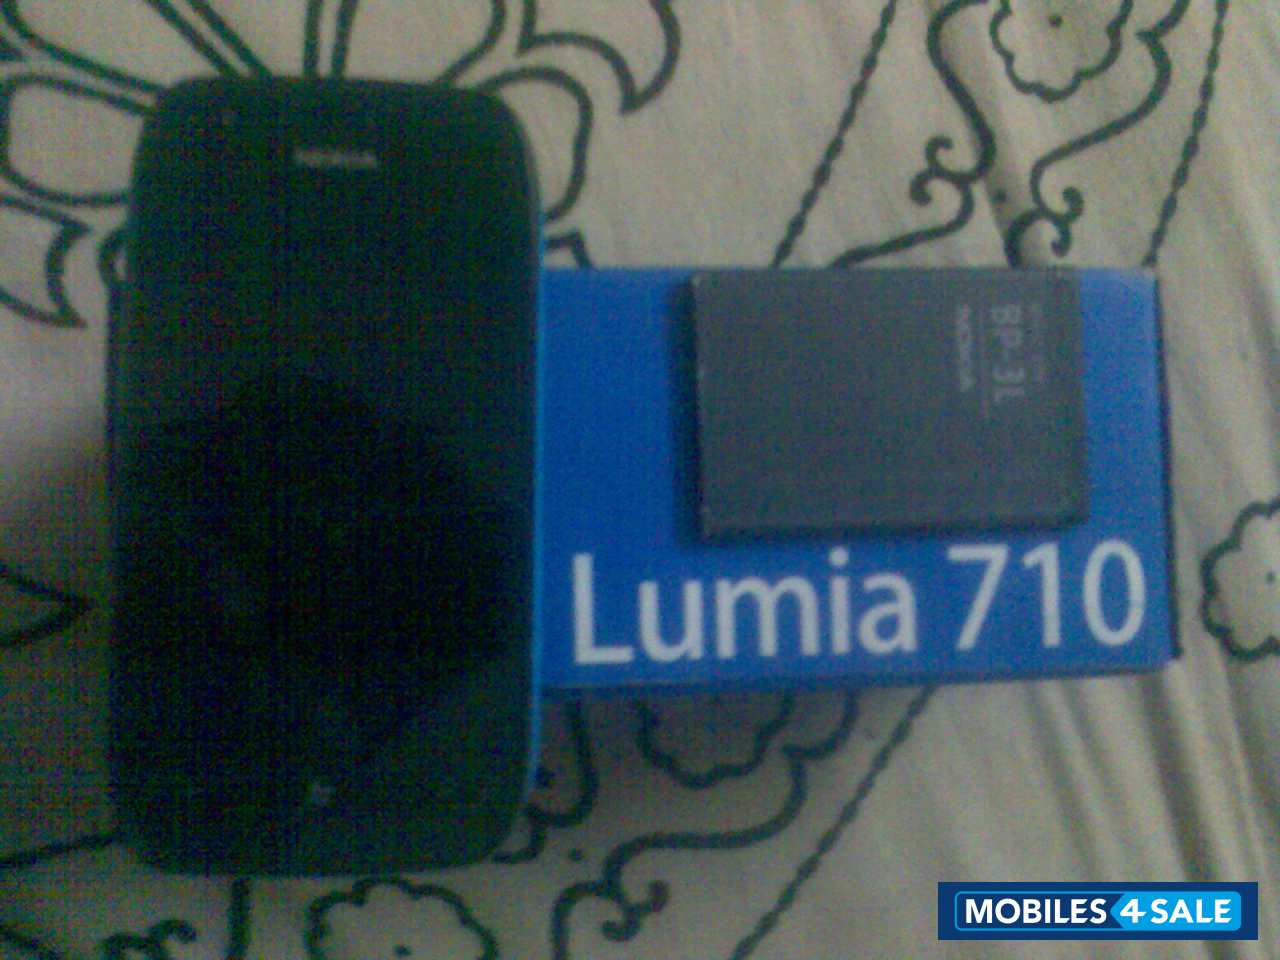 Blue Nokia Lumia 710